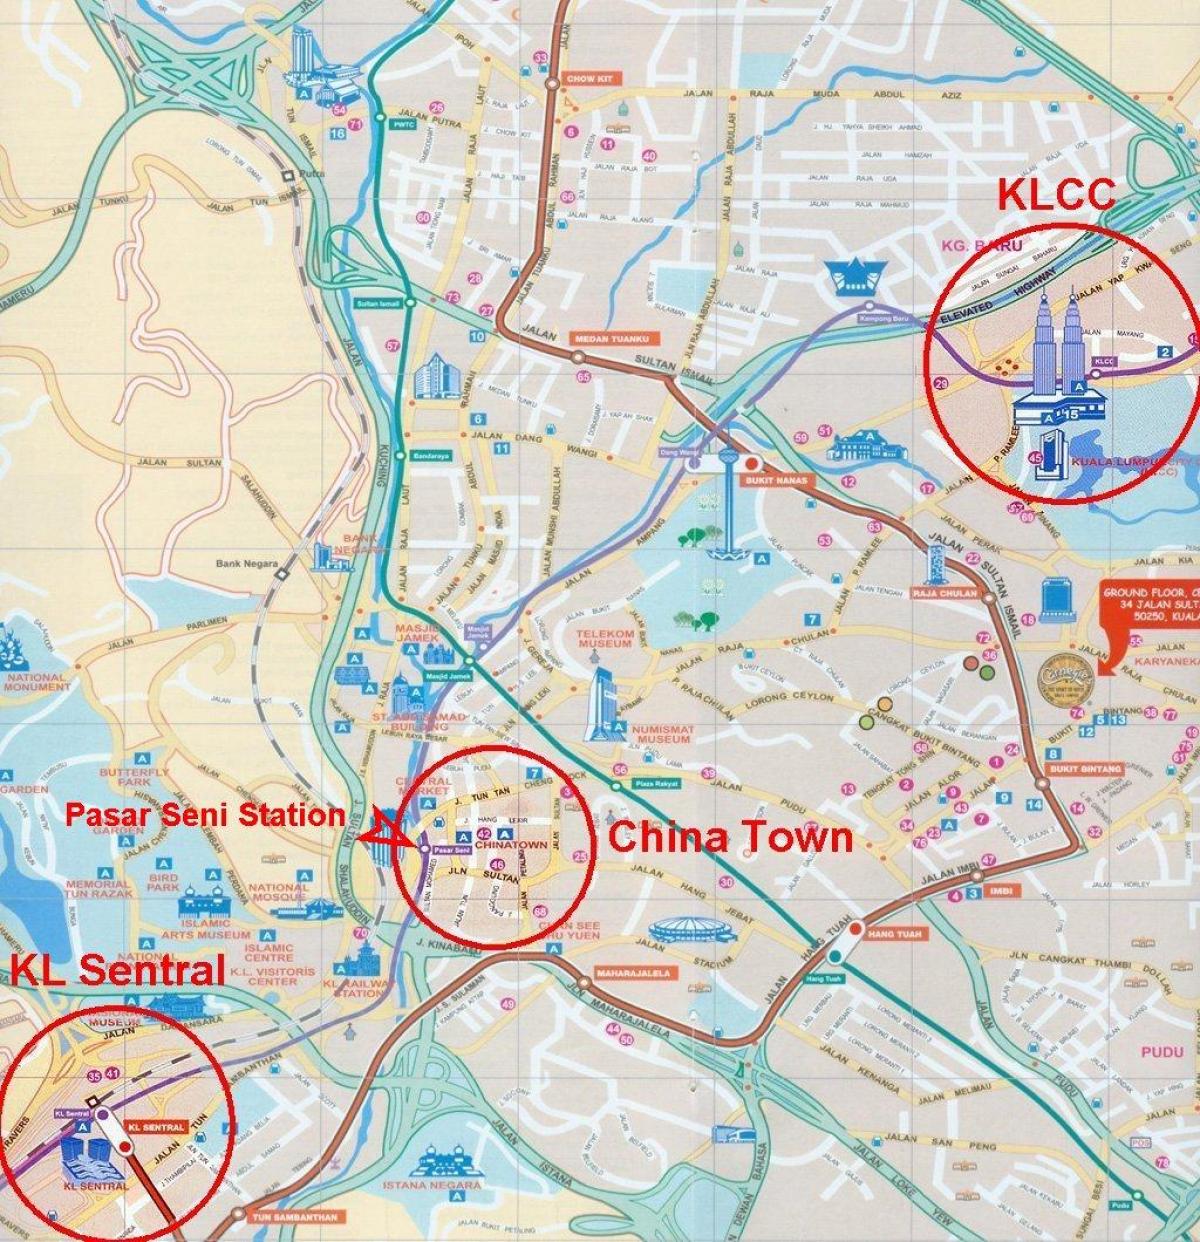 град Куала Лумпур картата